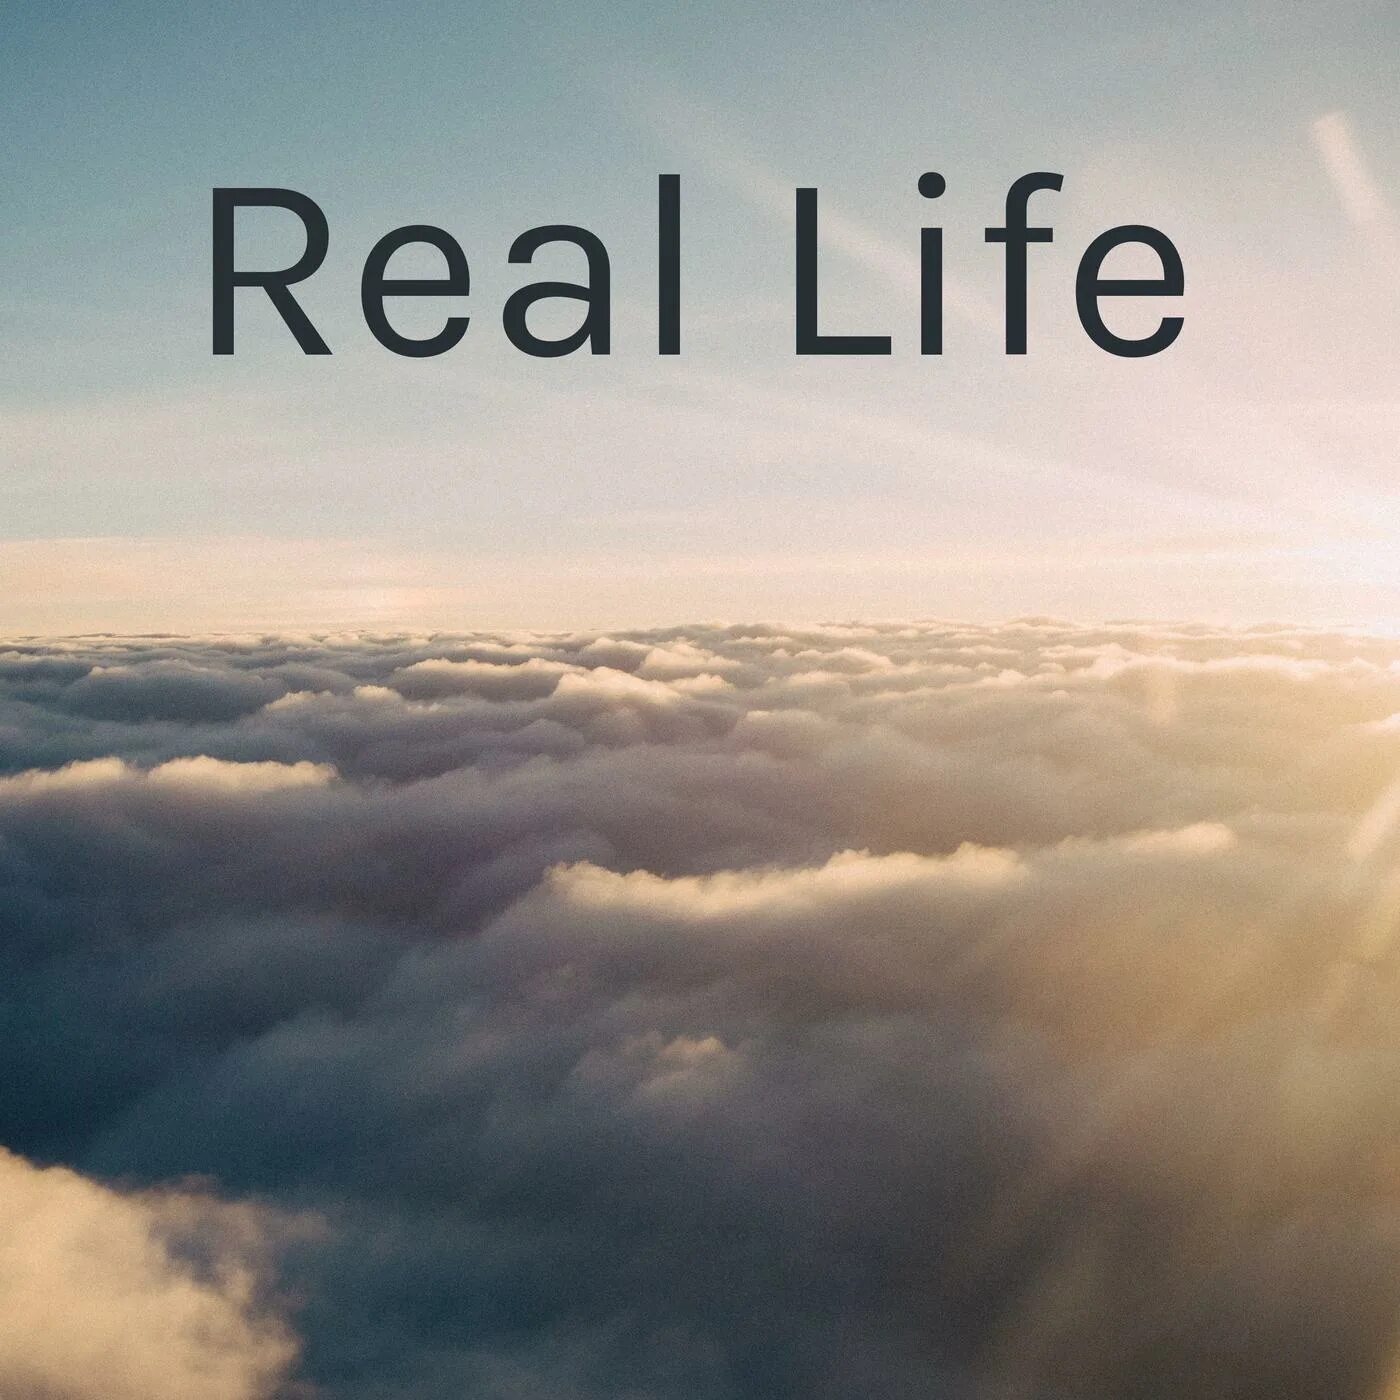 Real life rlp. Real Life. Real Life надпись. Real Life картинка. Авы real Life.